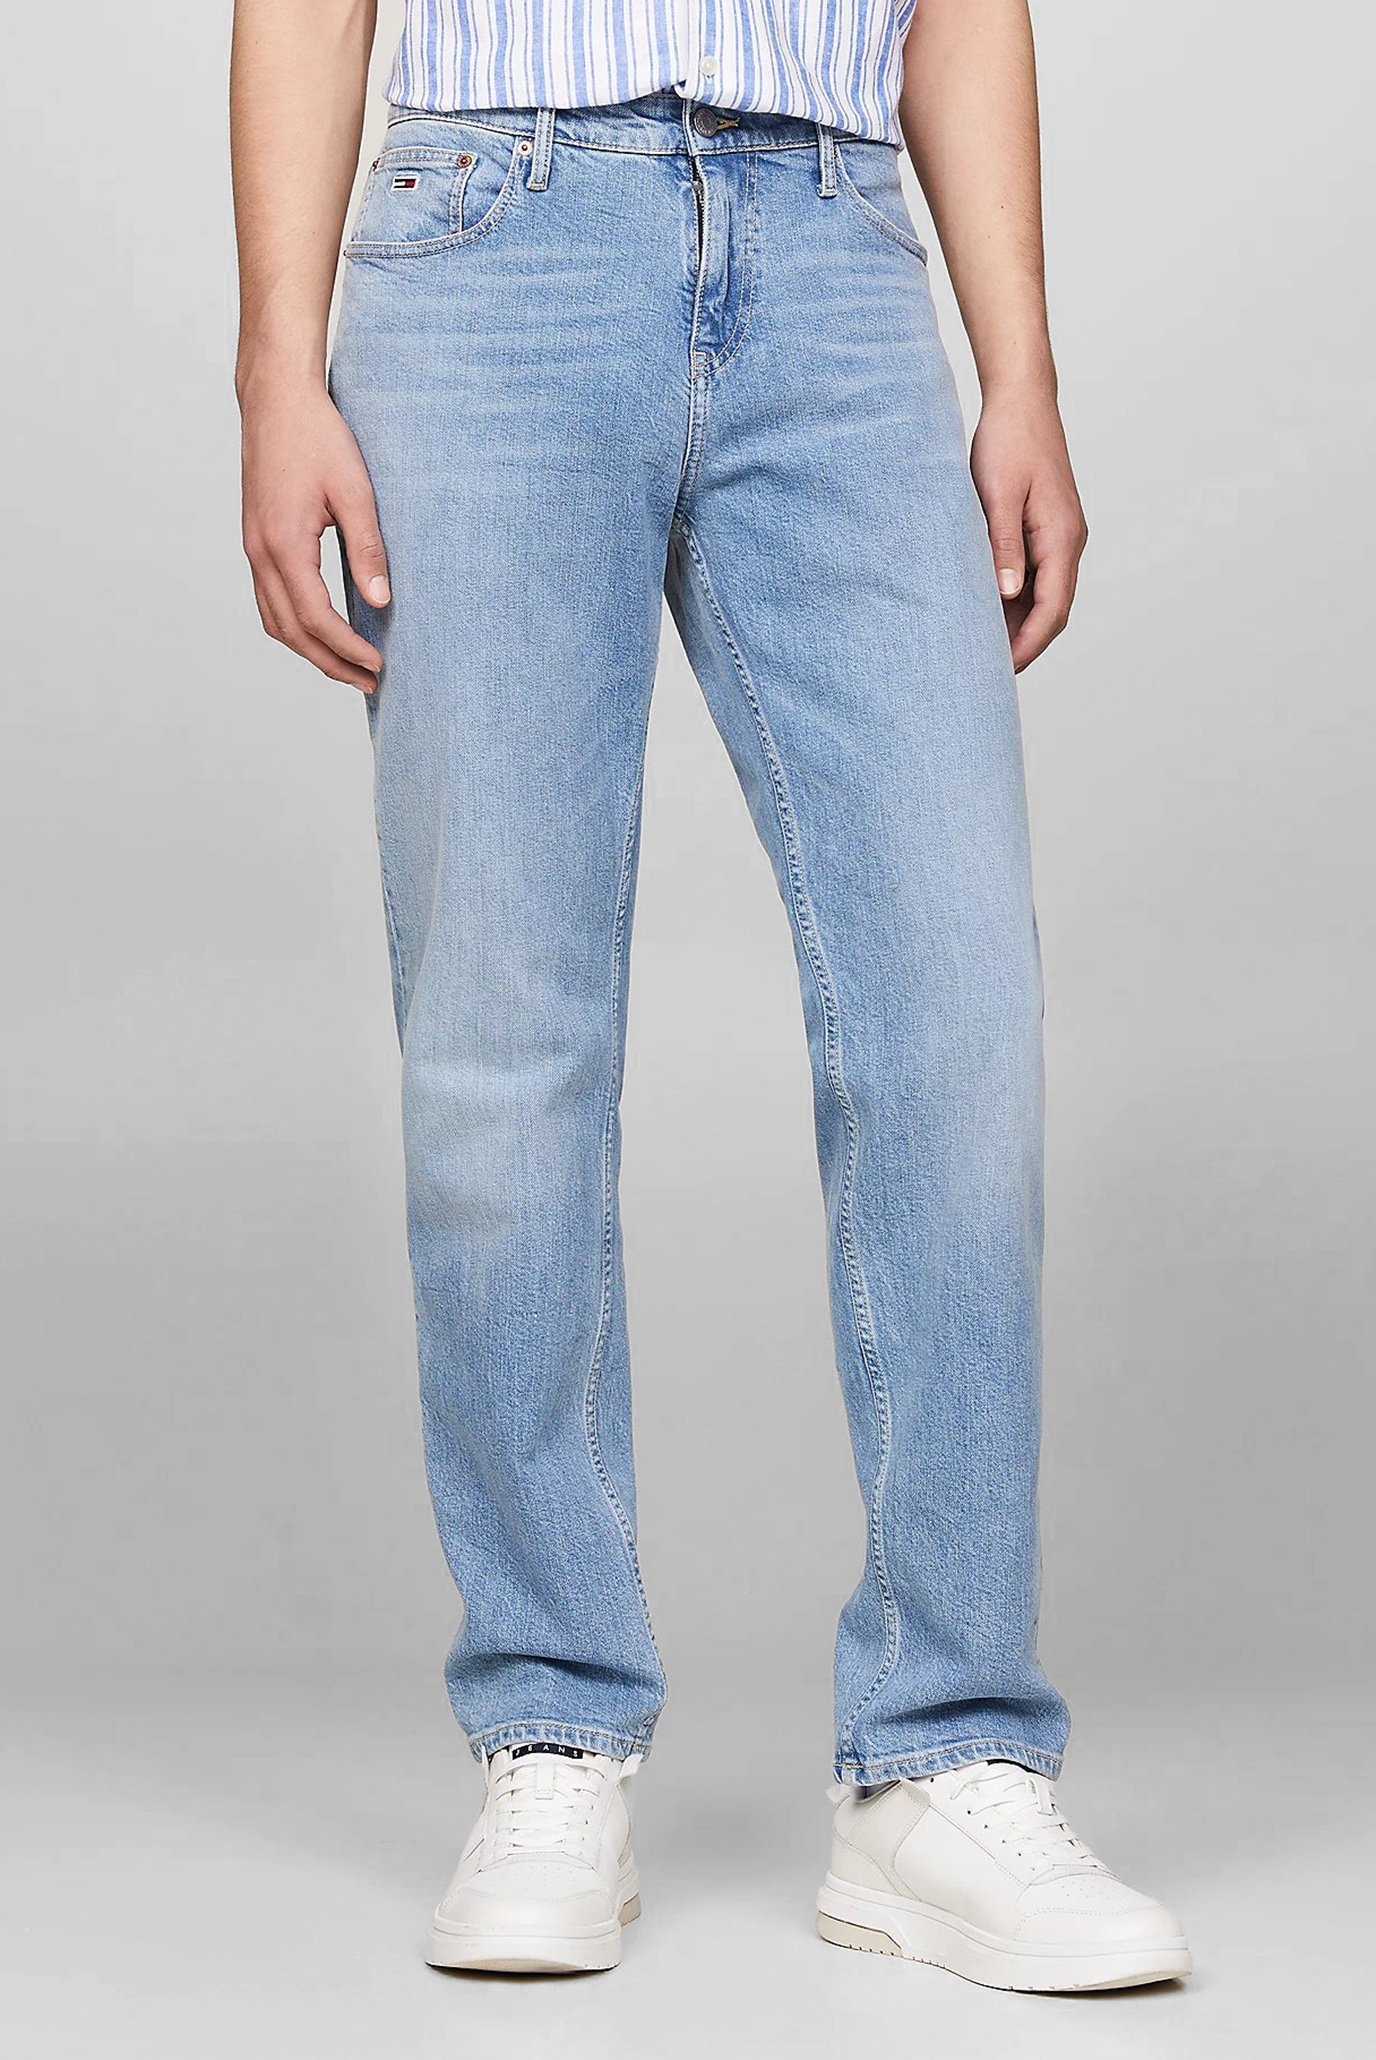 Мужские голубые джинсы RYAN RGLR STRGHT 1